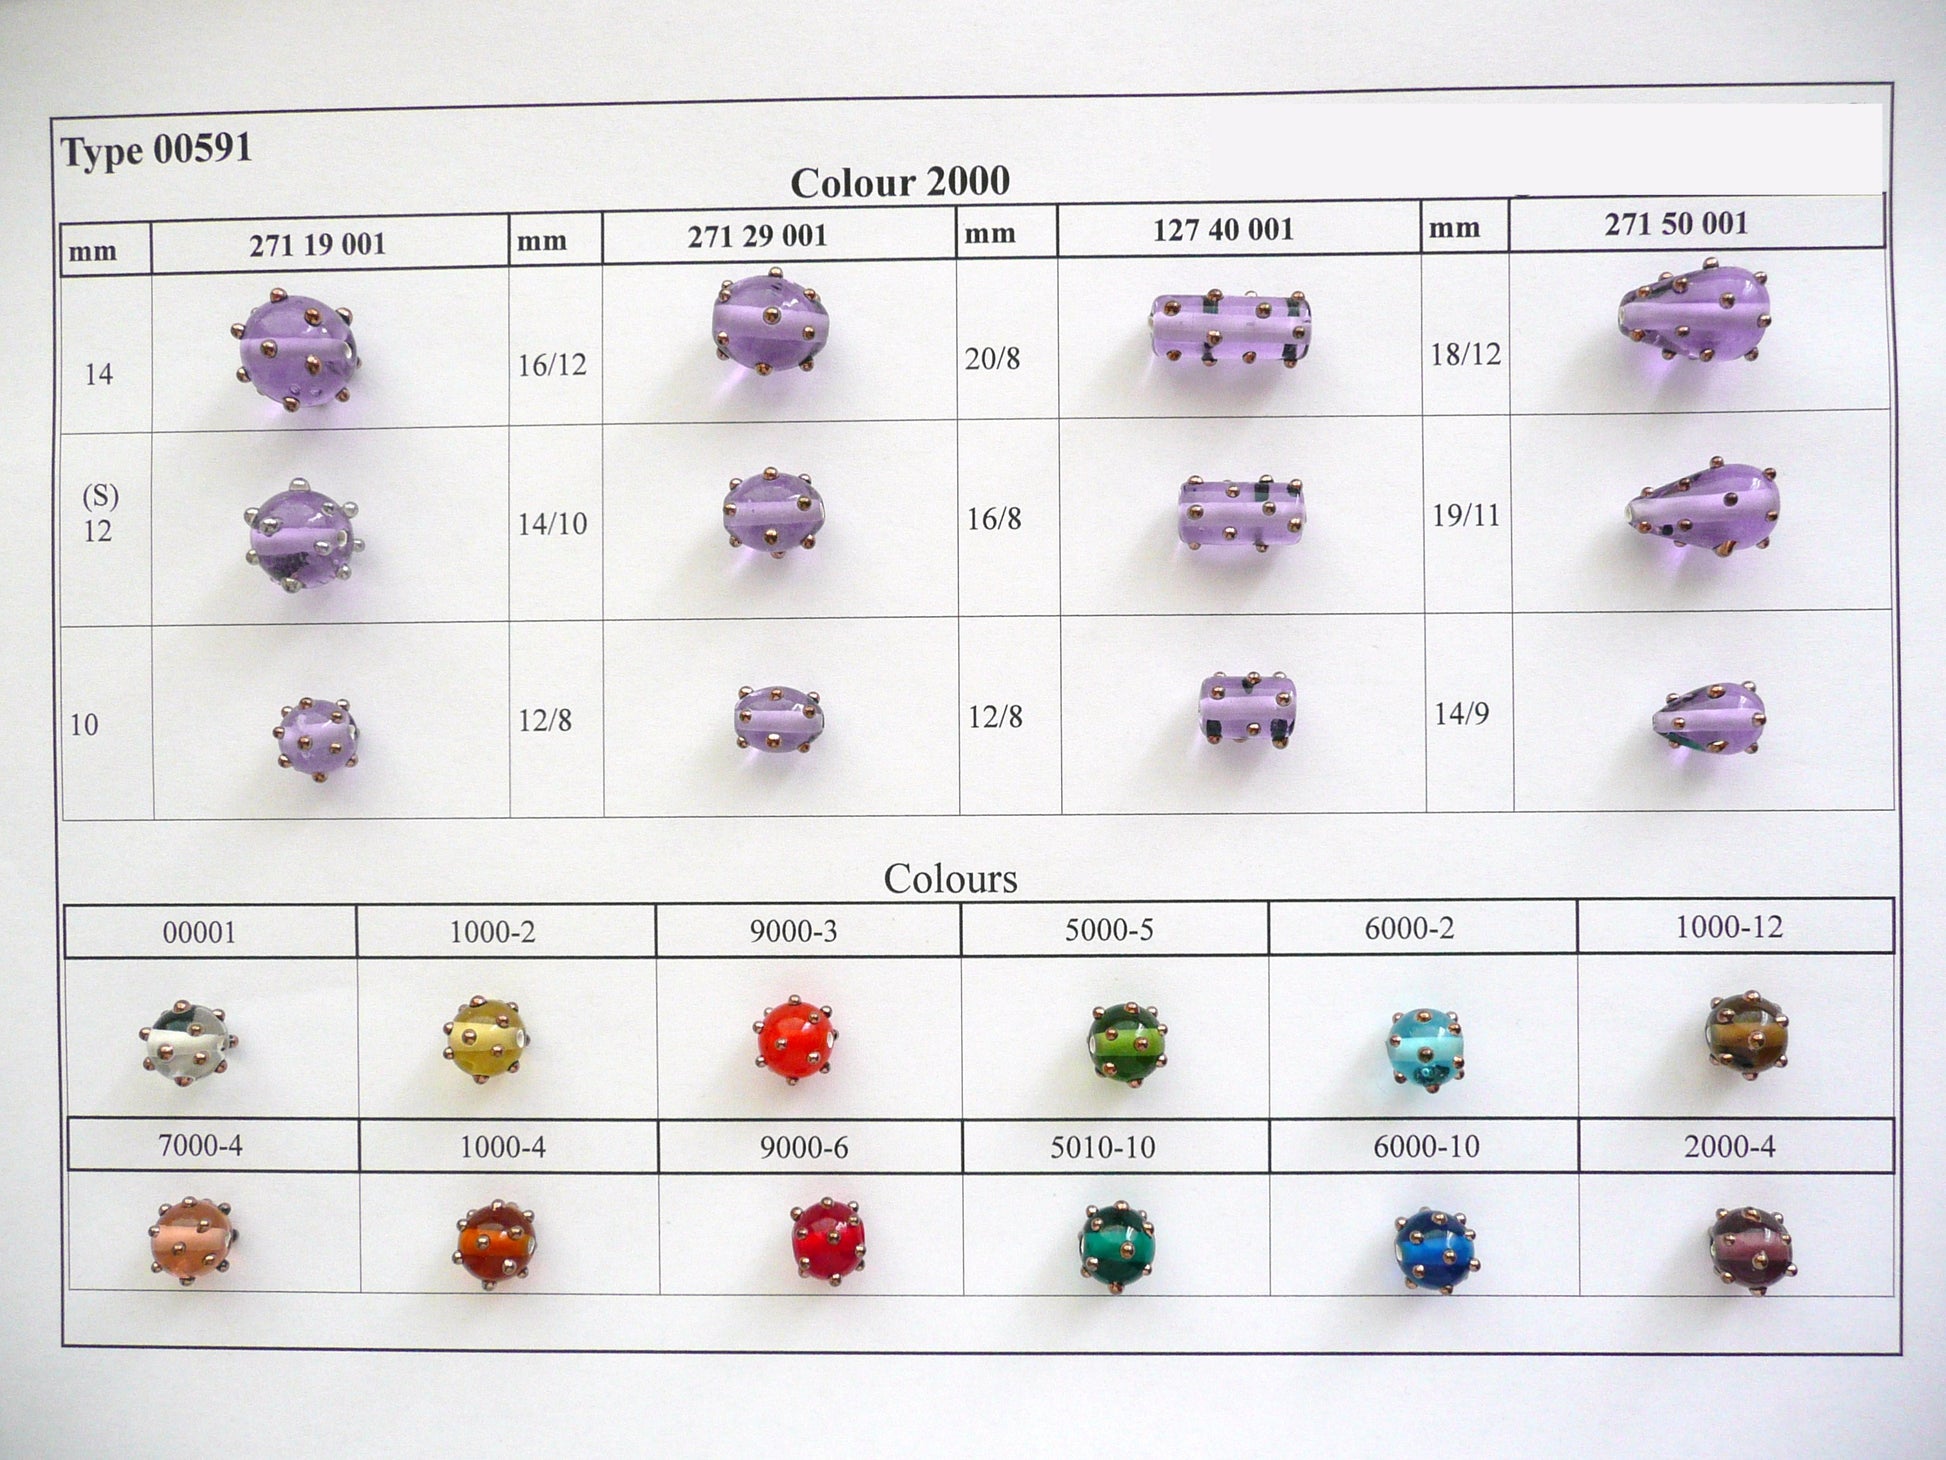 30 pcs Lampwork Beads 591 / Cylinder (271-40-001), Handmade, Preciosa Glass, Czech Republic